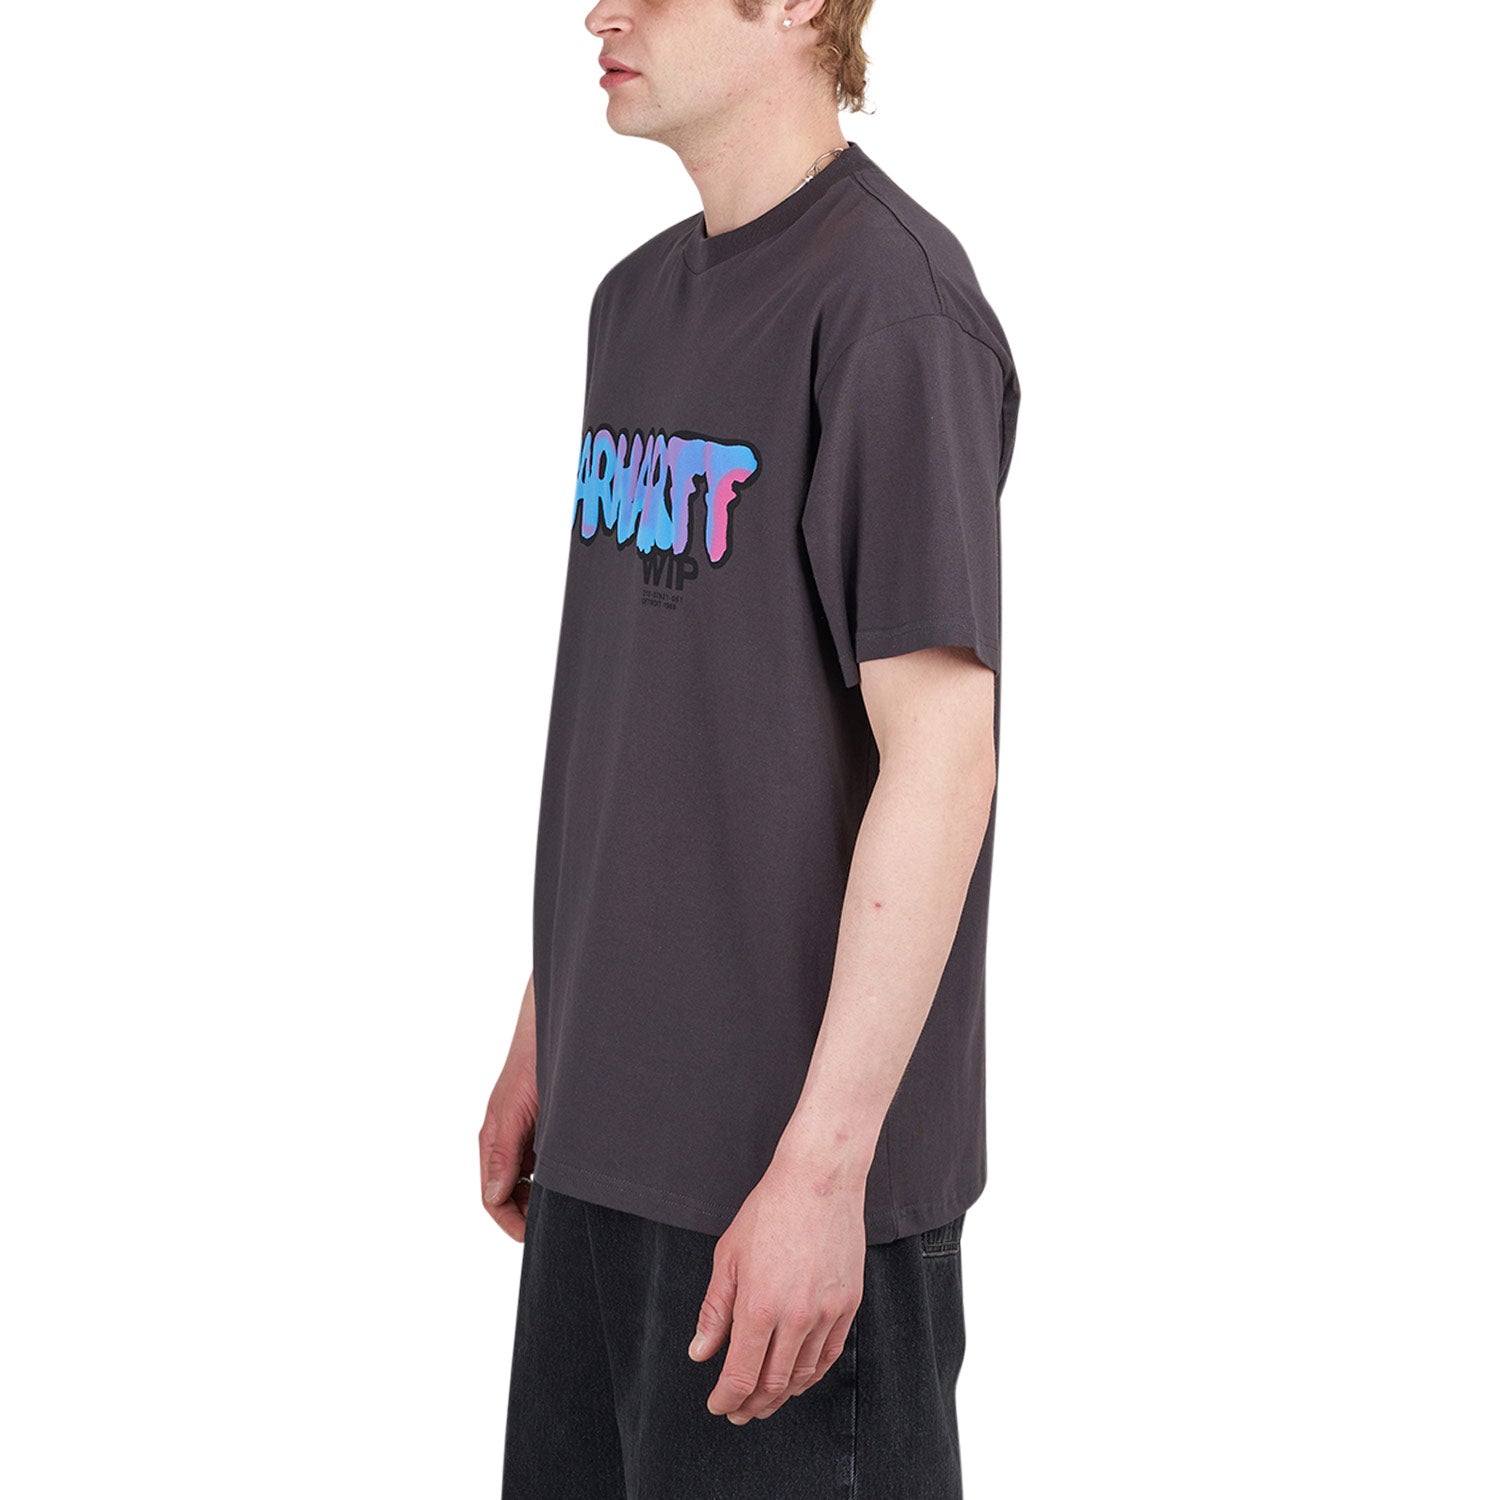 Carhartt WIP S/S Drip T-Shirt (Schwarz)  - Cheap Juzsports Jordan Outlet